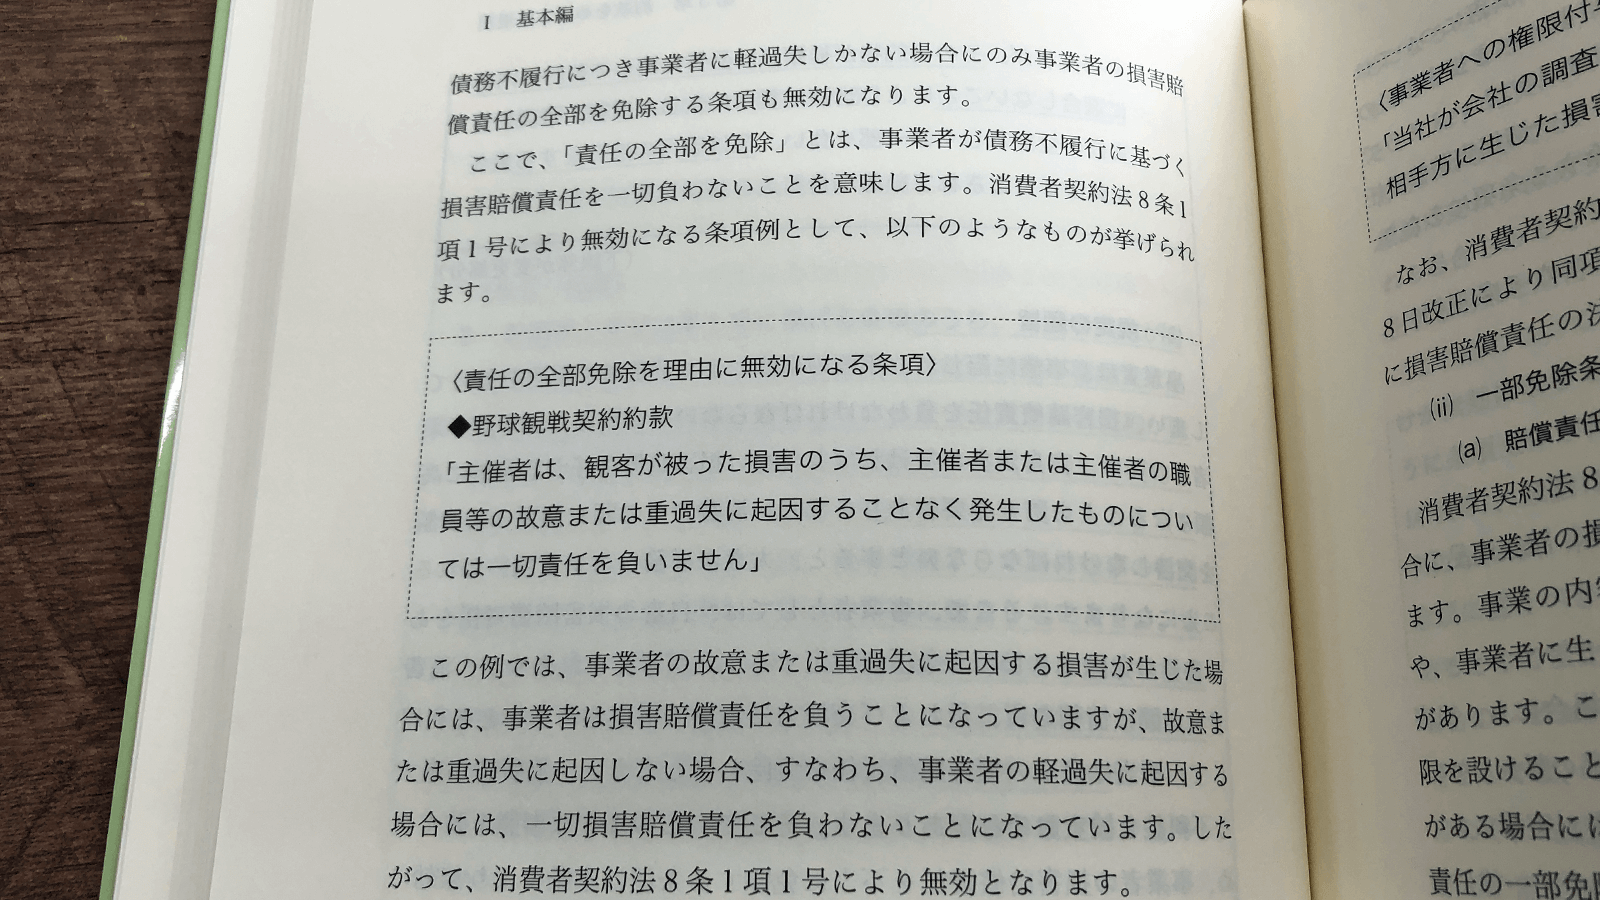 嶋寺基・細川恭子・小林直弥『約款の基本と実践』P68